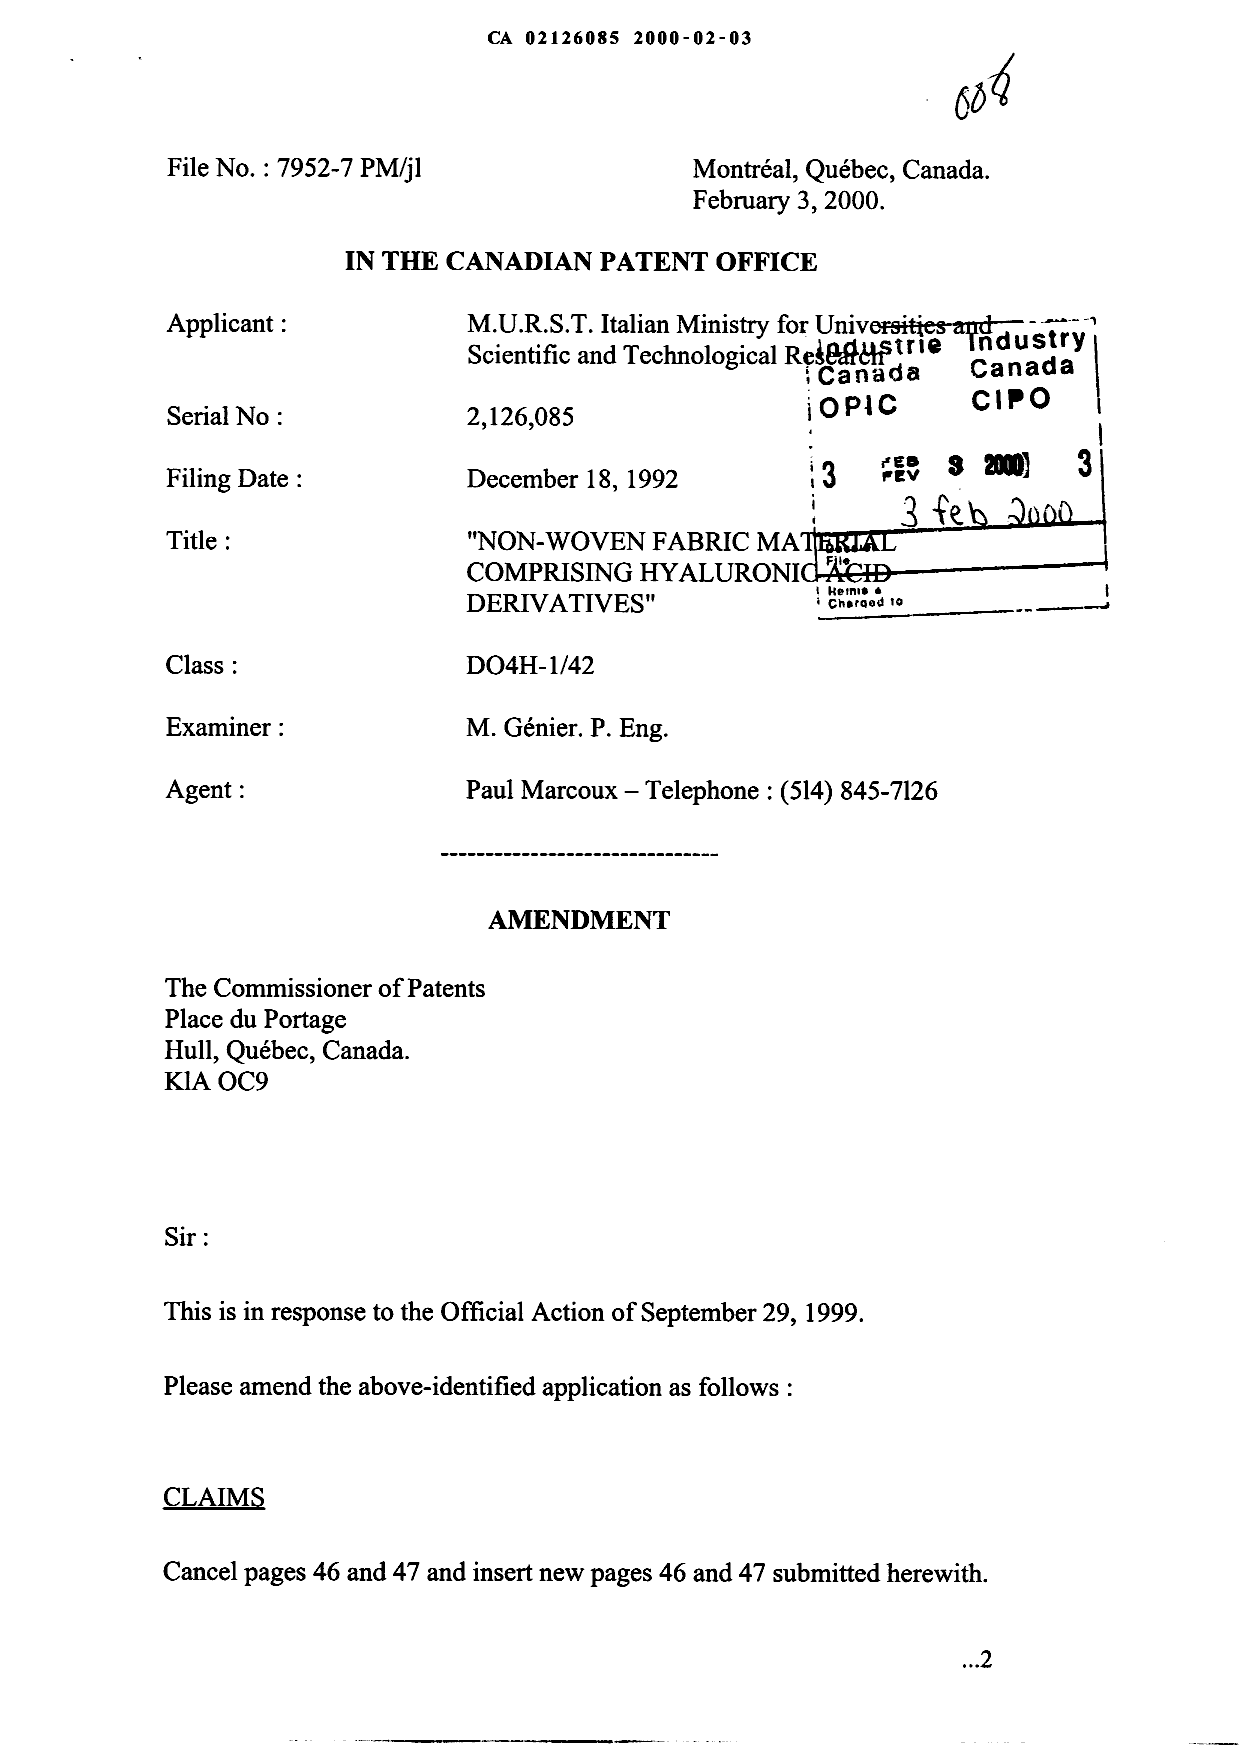 Document de brevet canadien 2126085. Poursuite-Amendment 20000203. Image 1 de 4